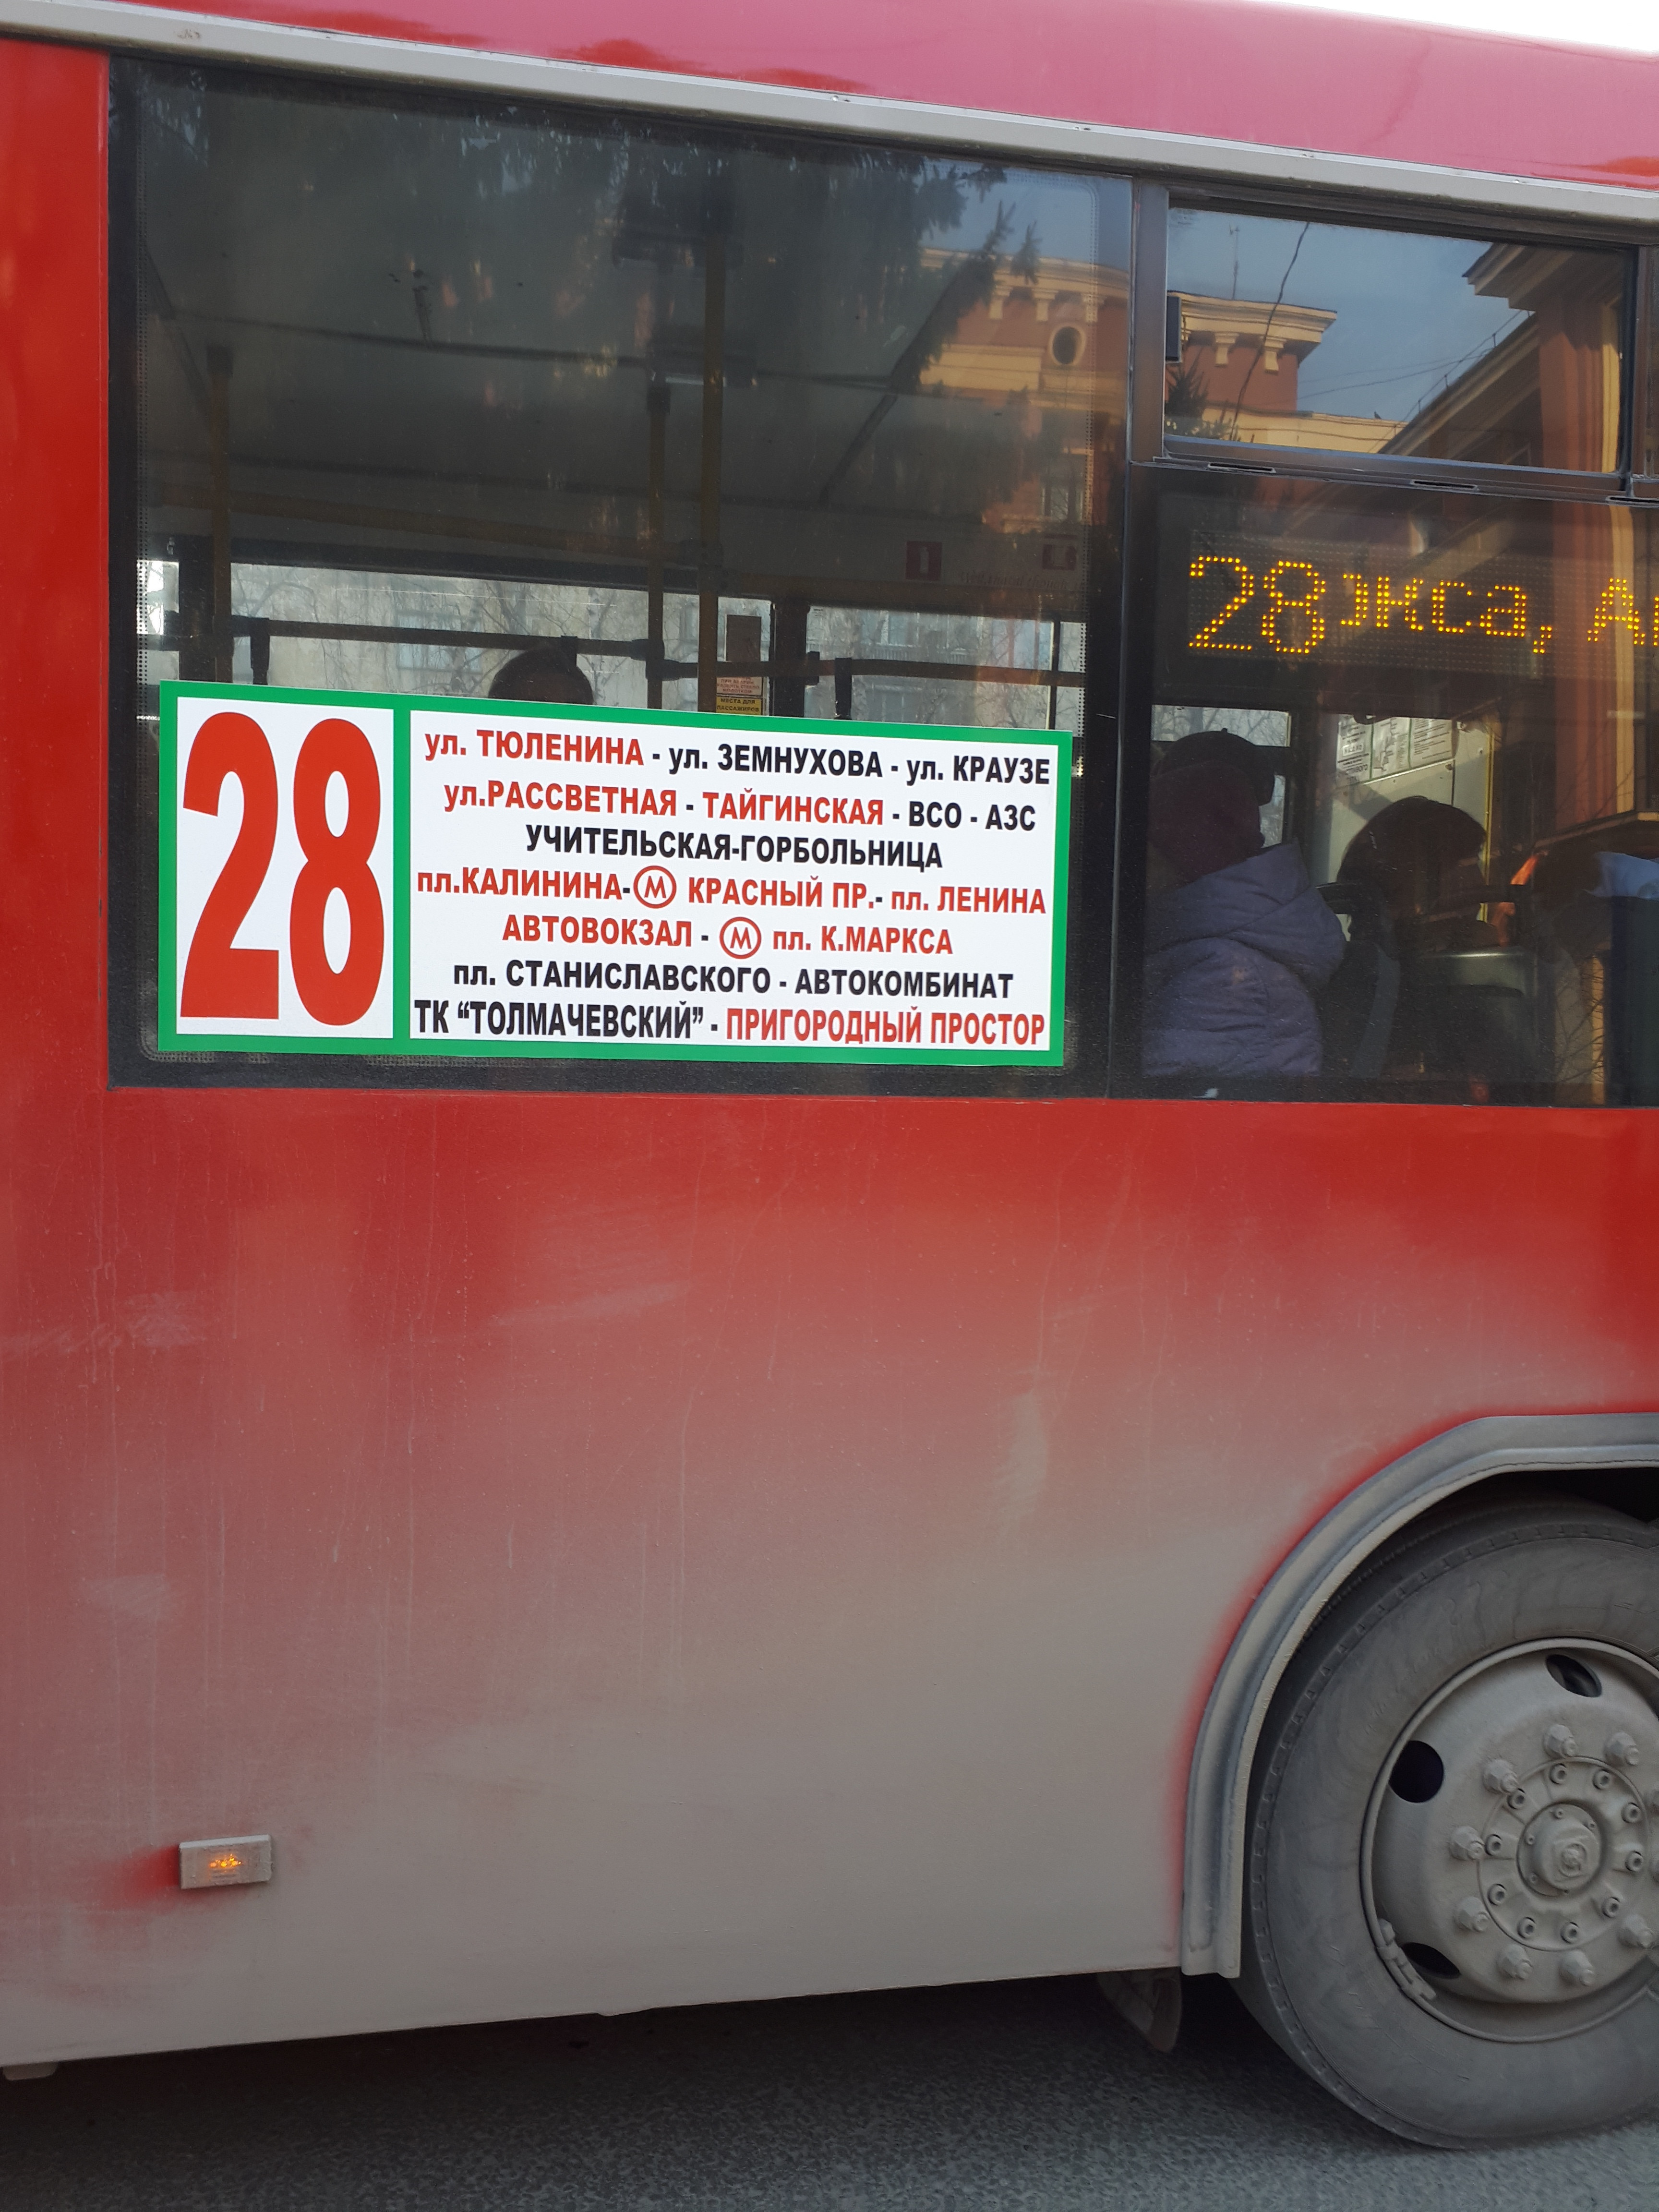 Автобус 28а казань. Новосибирскпрофстрой ПАТП-1. Автобус Новосибирск. 28 Автобус Новосибирск. Новосибирск проф тсрой ПАТП 1.